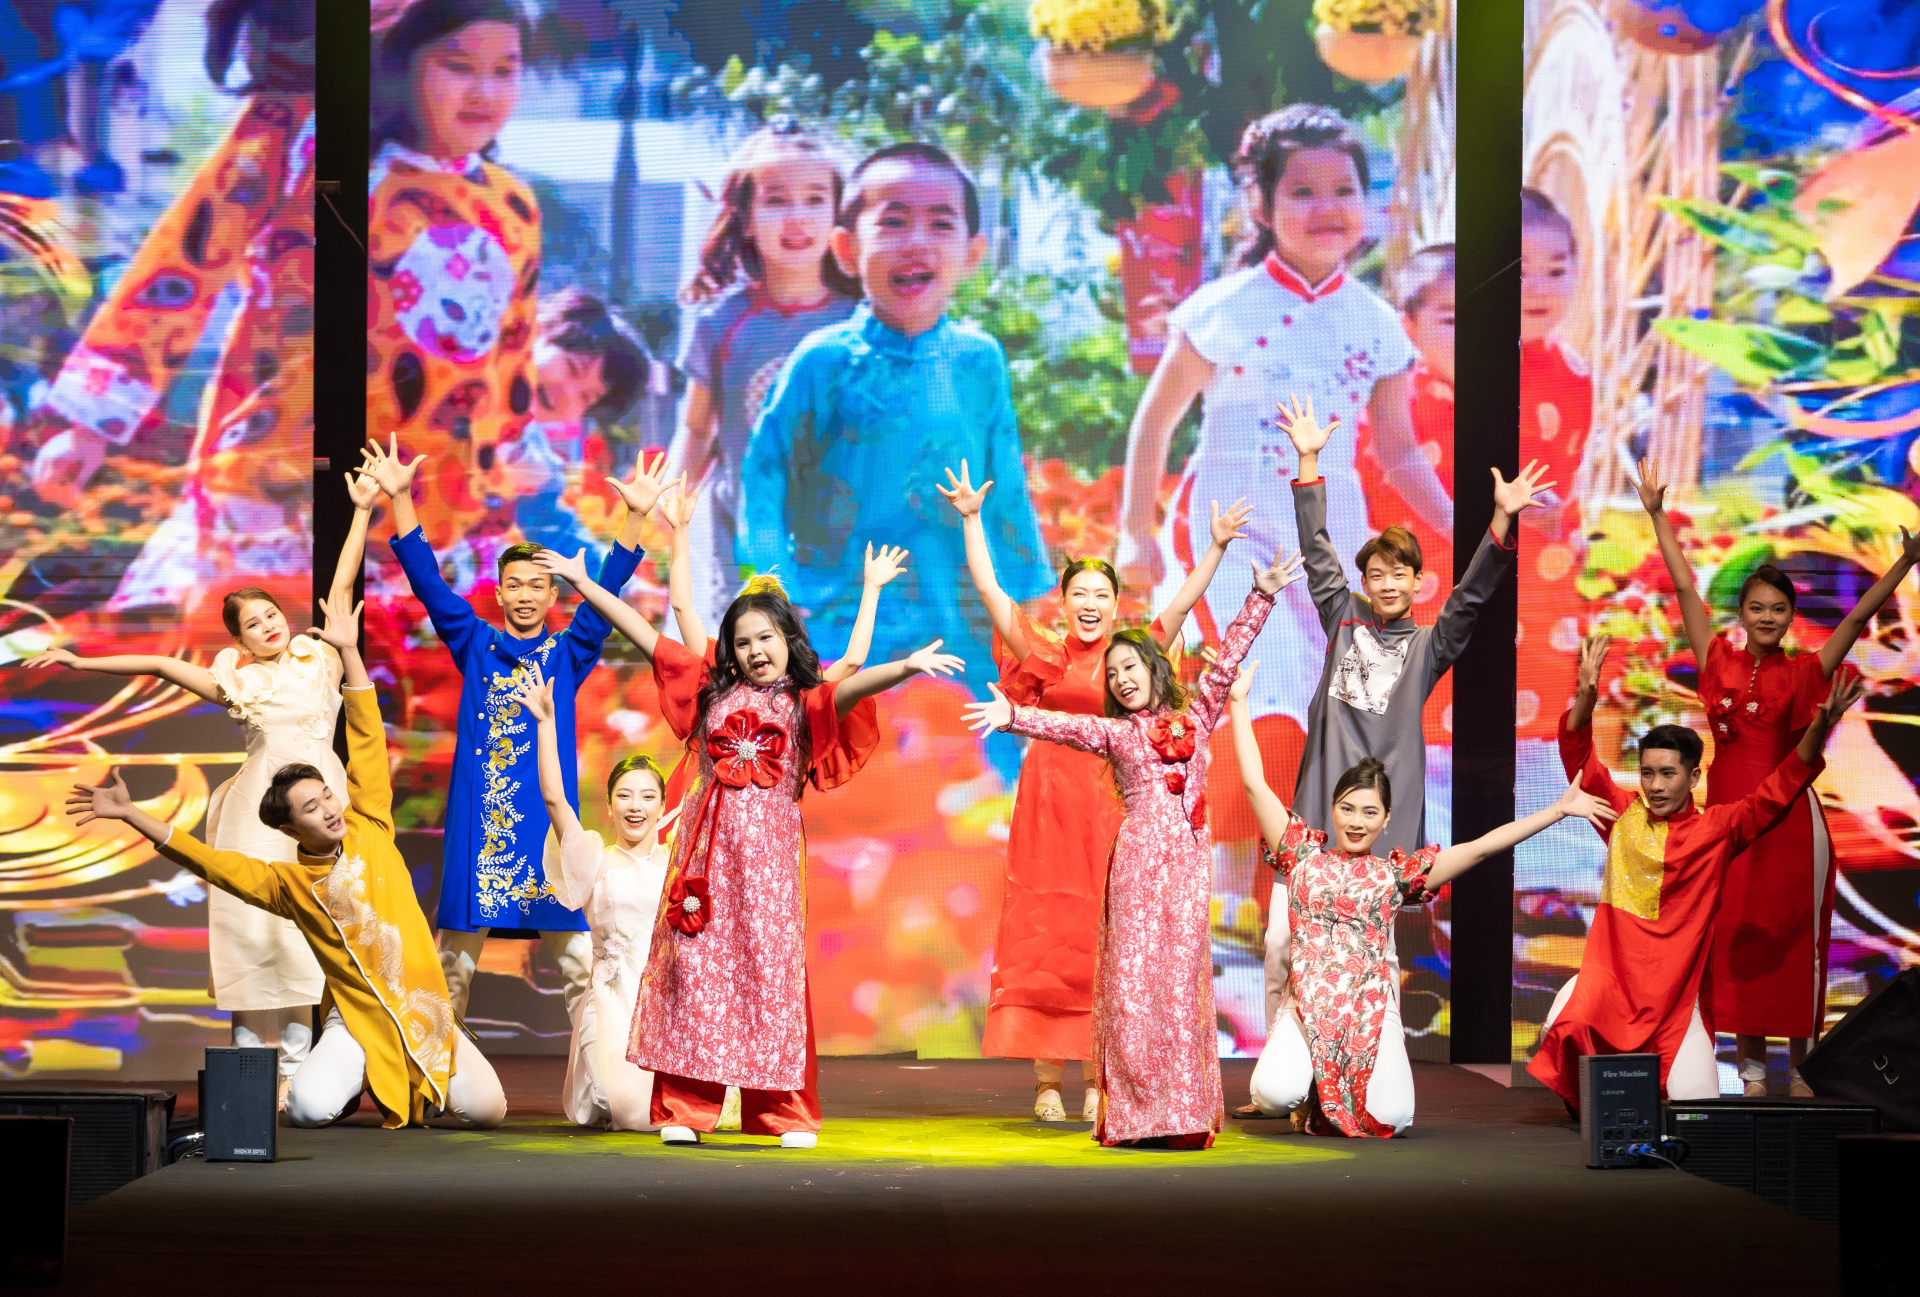 40 trẻ em có hoàn cảnh đặc biệt trình diễn áo dài trong Xuân đất Tổ - ảnh 1